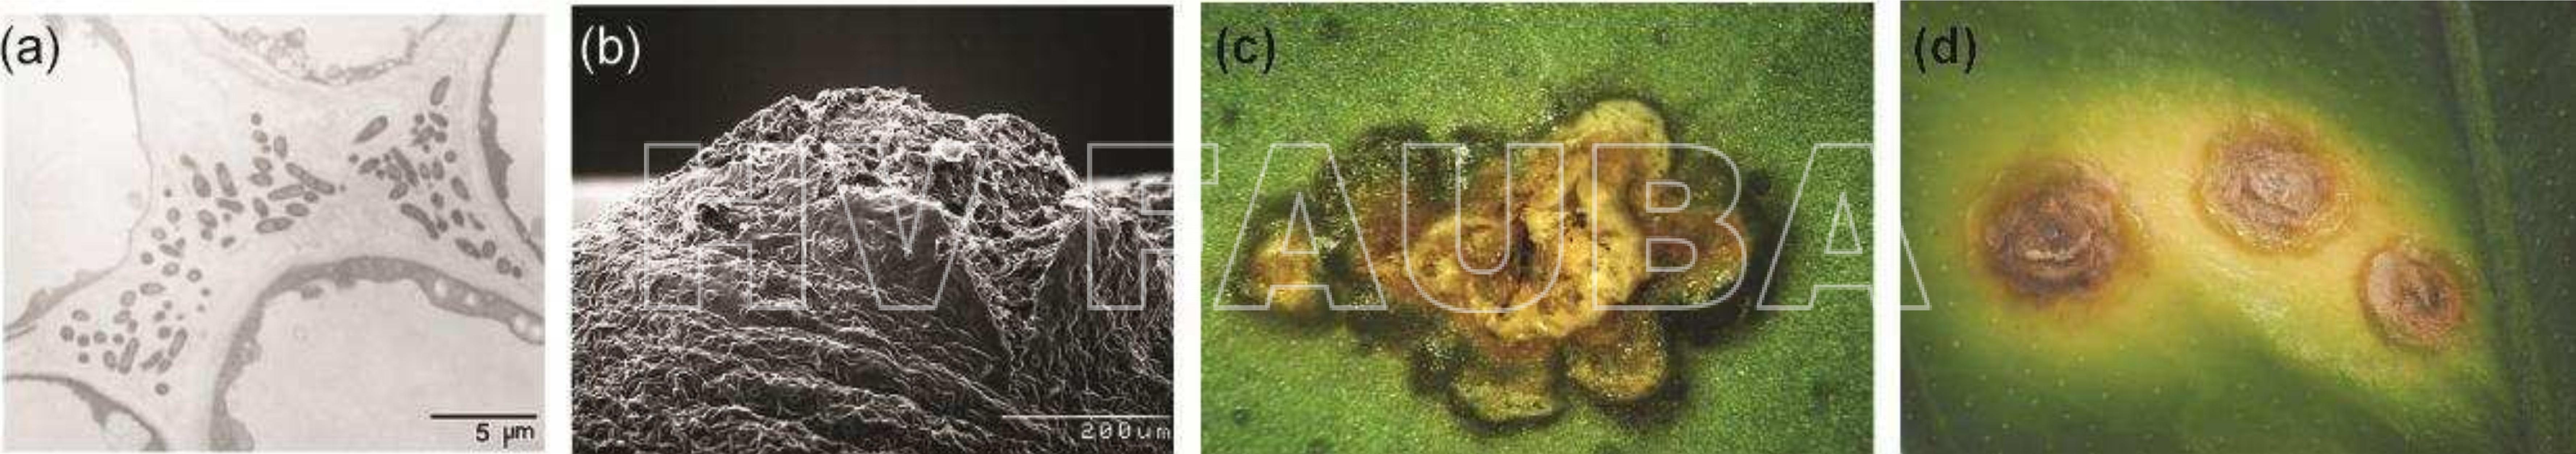 Detalle de las lesiones producidas por Xanthomonas en cítricos. (a) X. axonopodis pv. citrumelo a los 7 d.p.i en el espacio apoplástico de una planta de pomelo. (b) Fotografía tomada con un microscopio electrónico de barrido de un cancro rompiendo la epidermis. (c) Lesión húmeda (water soakin) característica rodeando la pústula o pseudocancro. (d) Pseudocancros rodeados por el halo clorótico amarillento característico de la infección por Xanthomonas. Autores: elaborado por Furman Nicolás, Graham et al., 2004 fotografía (a); Gottwald et al., 2002 fotografías (b), (c), (d).